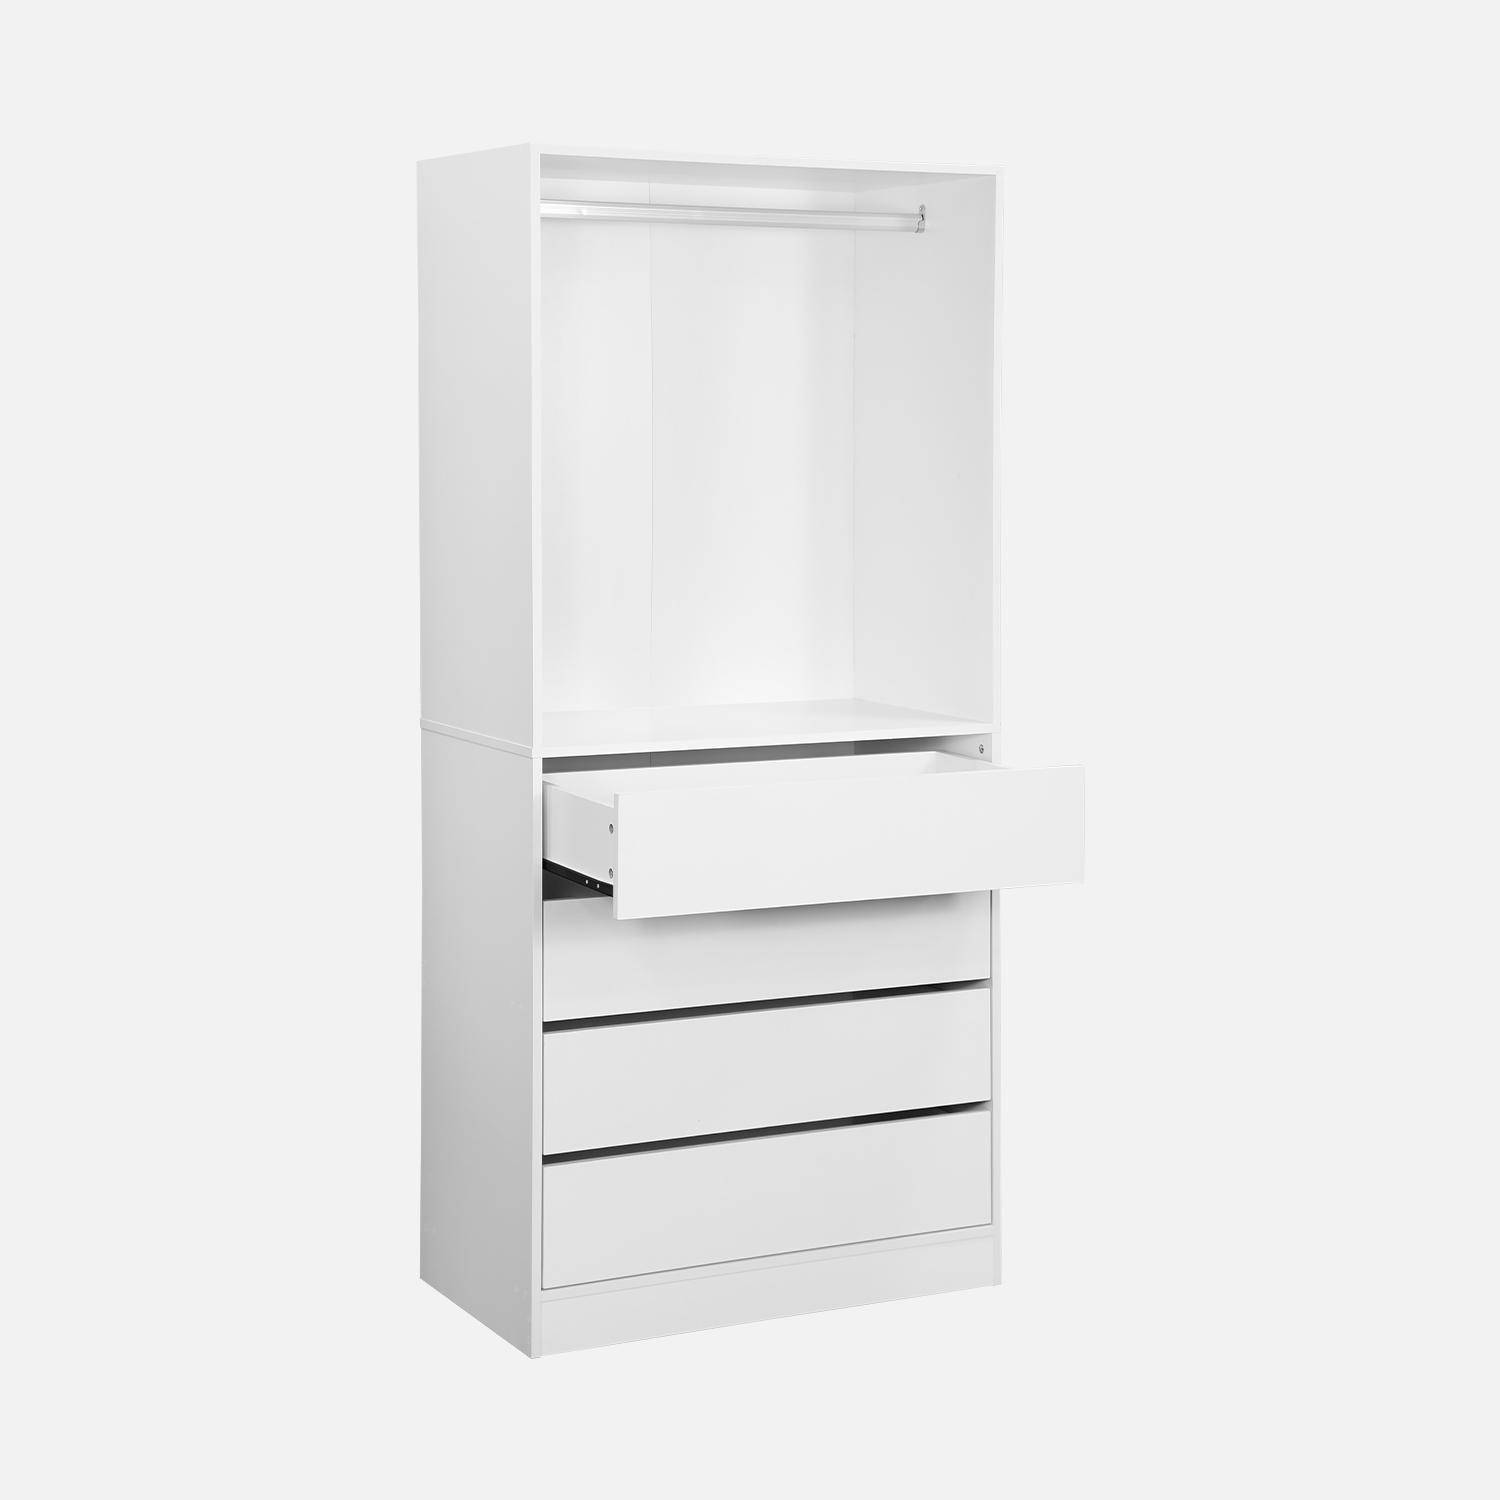 Modulo armadio con 4 cassetti e 1 armadio, bianco, pannelli laminati Photo6